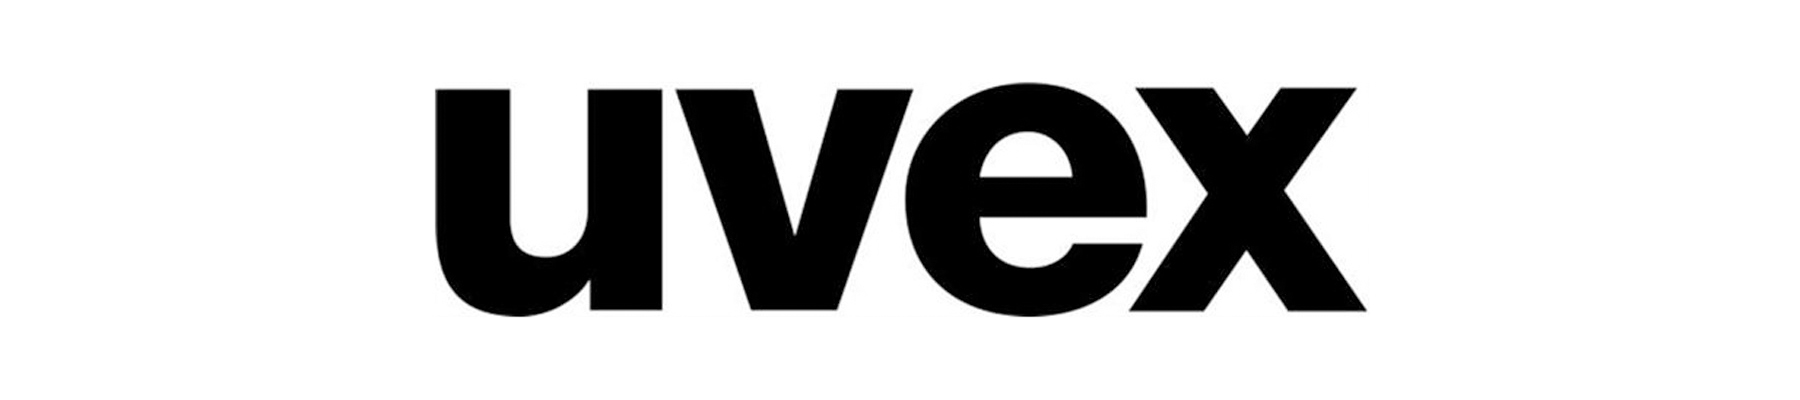 uvex sponsor